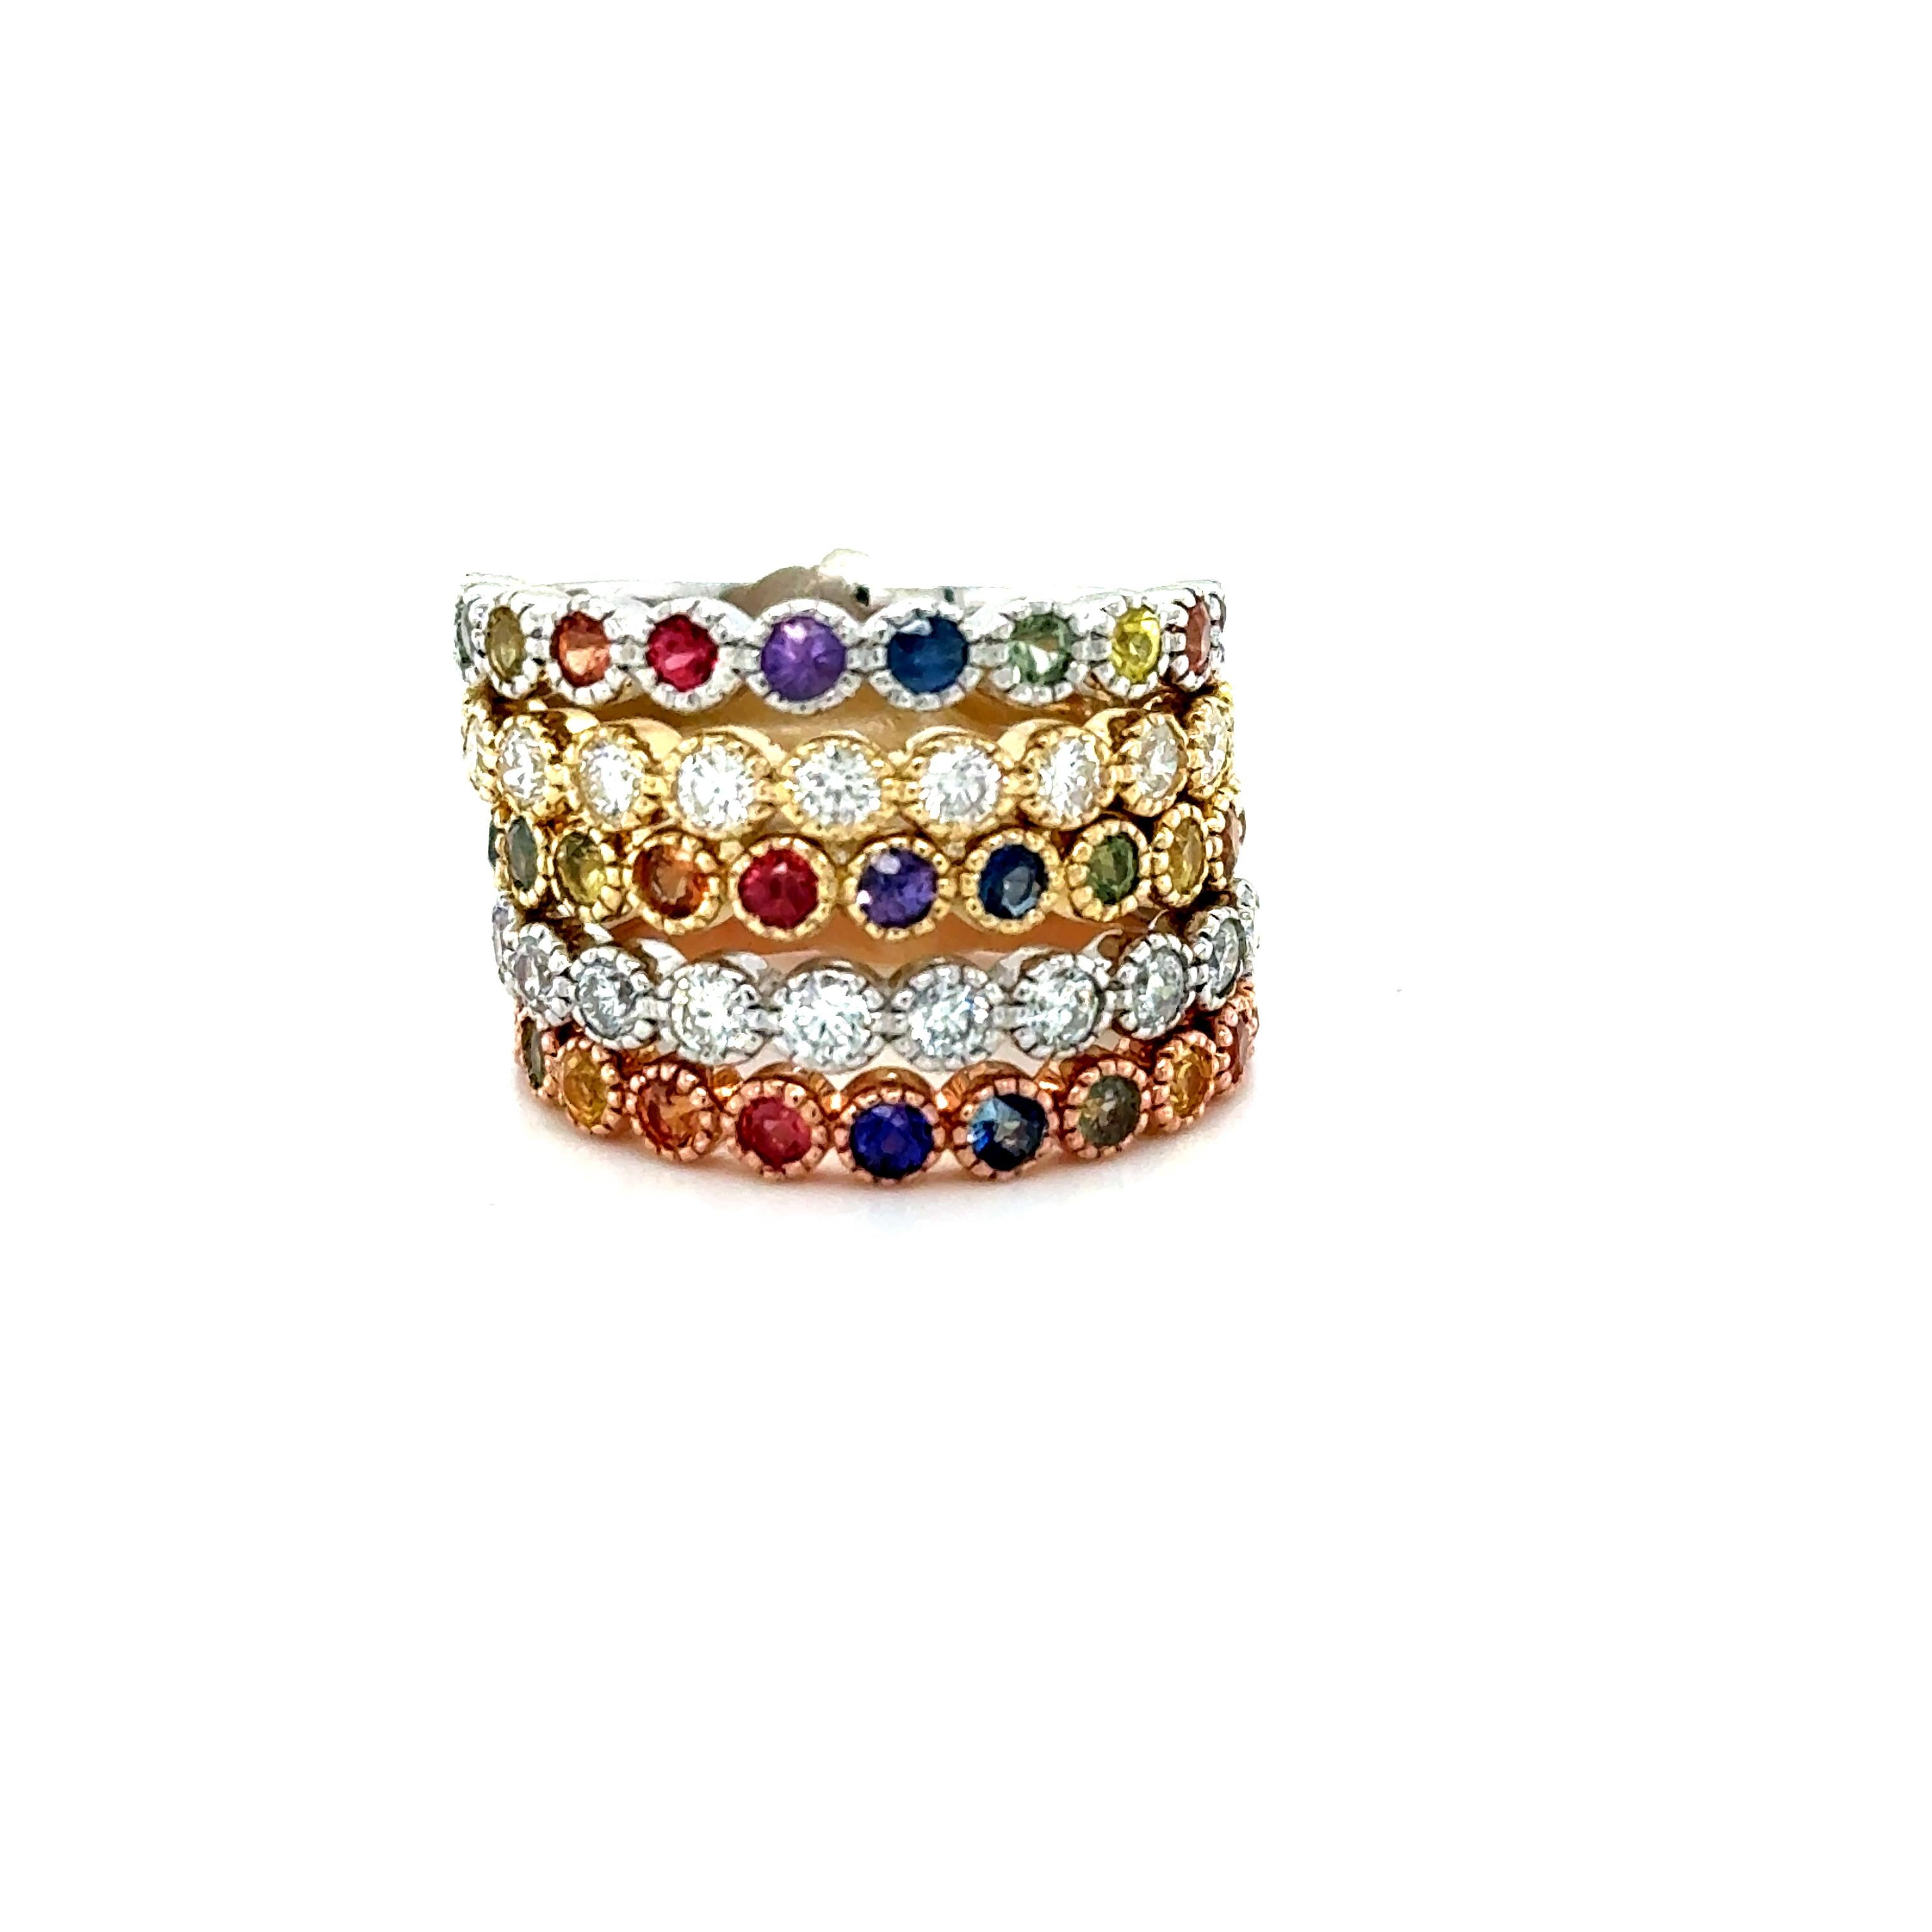 2.84 Carat Diamond and Multi Color Sapphire Stackable Gold Band Set

Lot de 5 bracelets élégants et raffinés en diamant et saphir de 2,84 carats qui ne manqueront pas d'enrichir votre collection d'accessoires ! Il y a 11 saphirs ronds dans 3 des